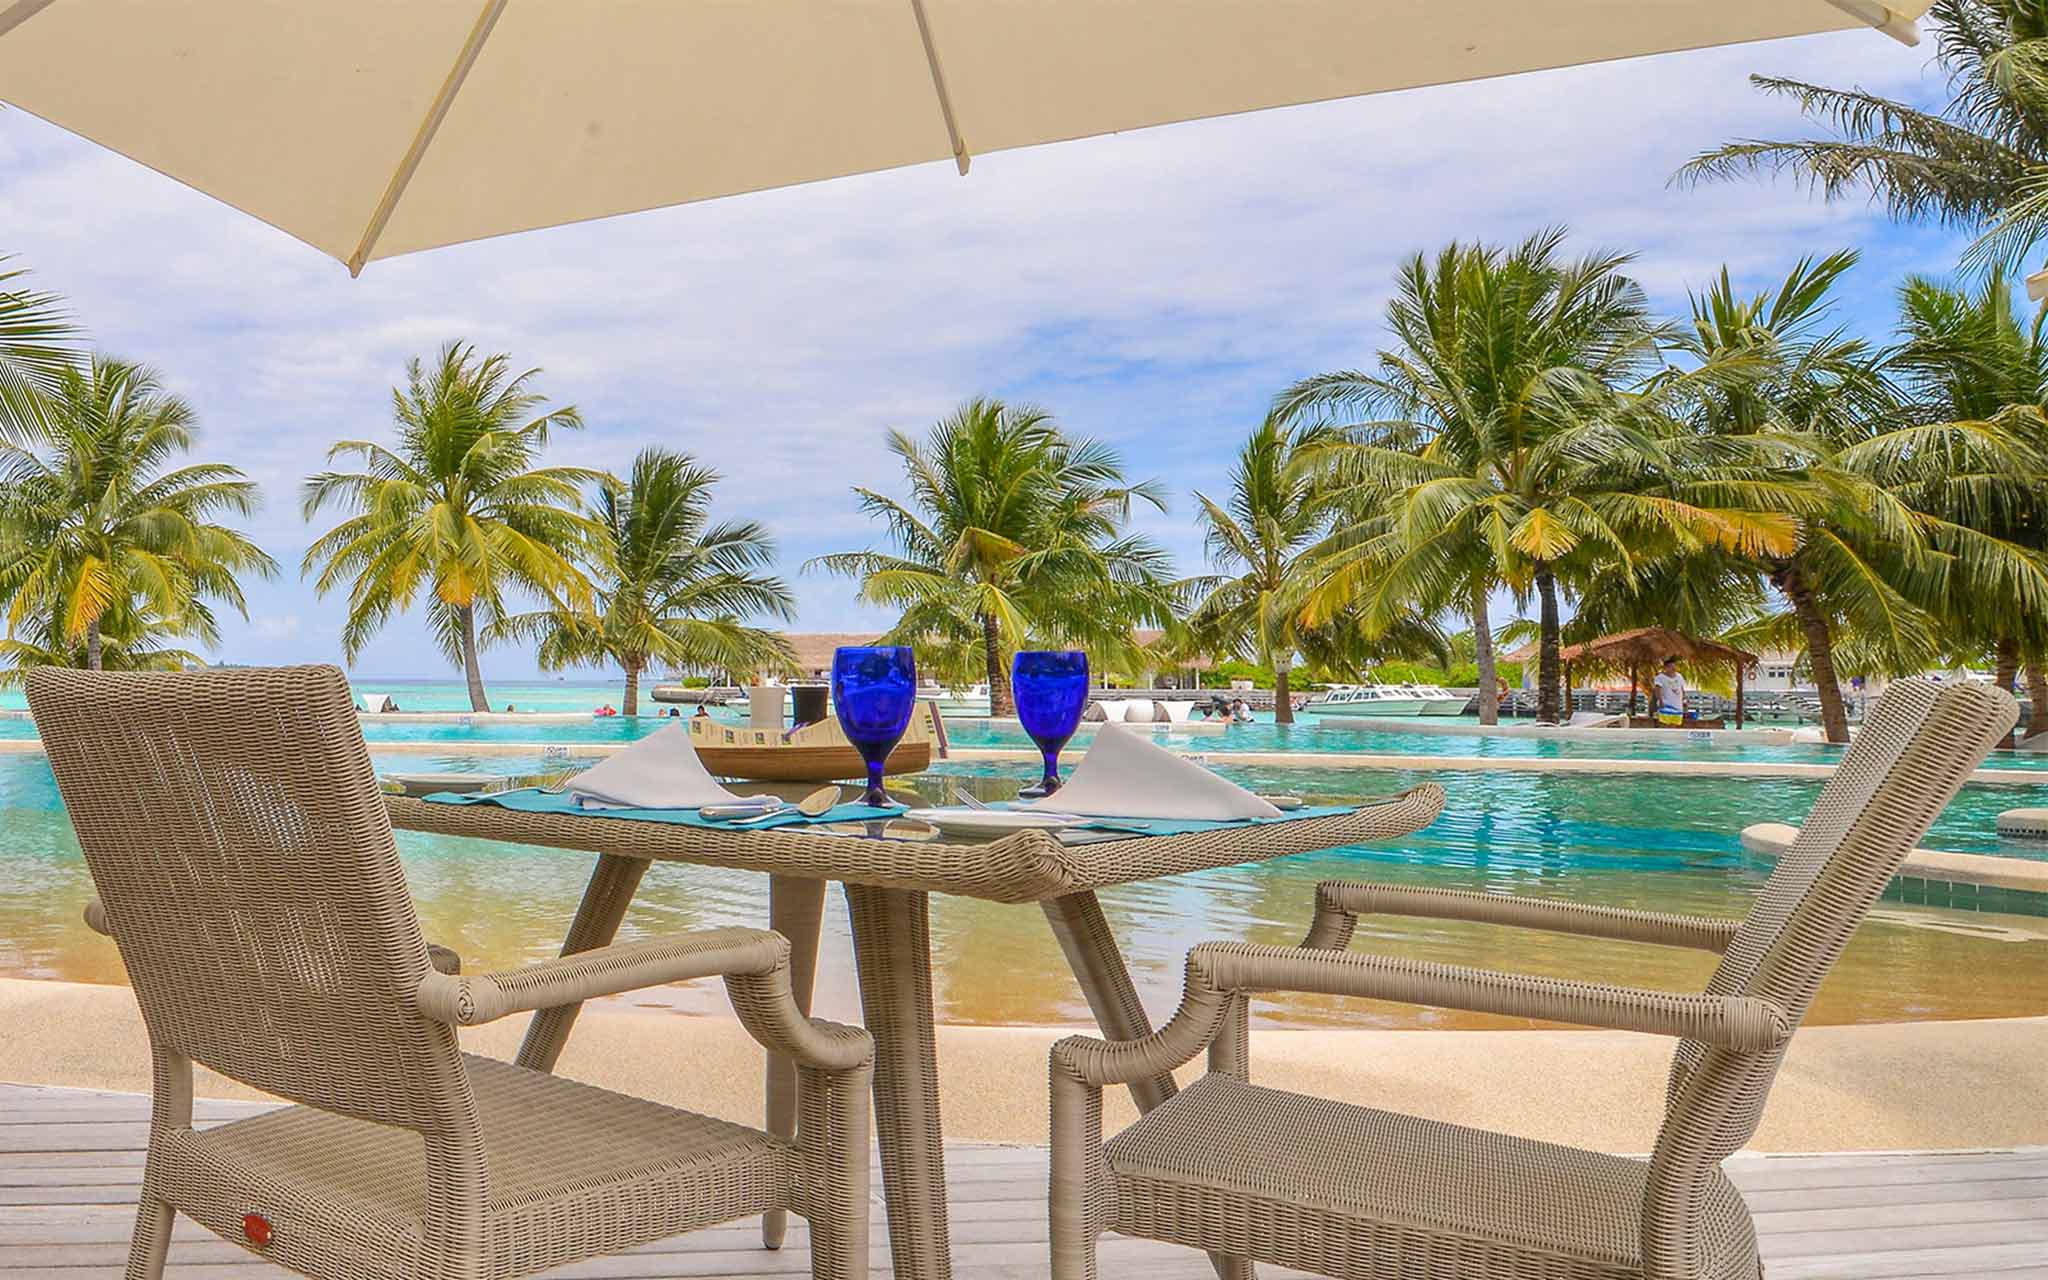 Group bookings with Holiday Inn Resort Kandooma Maldives